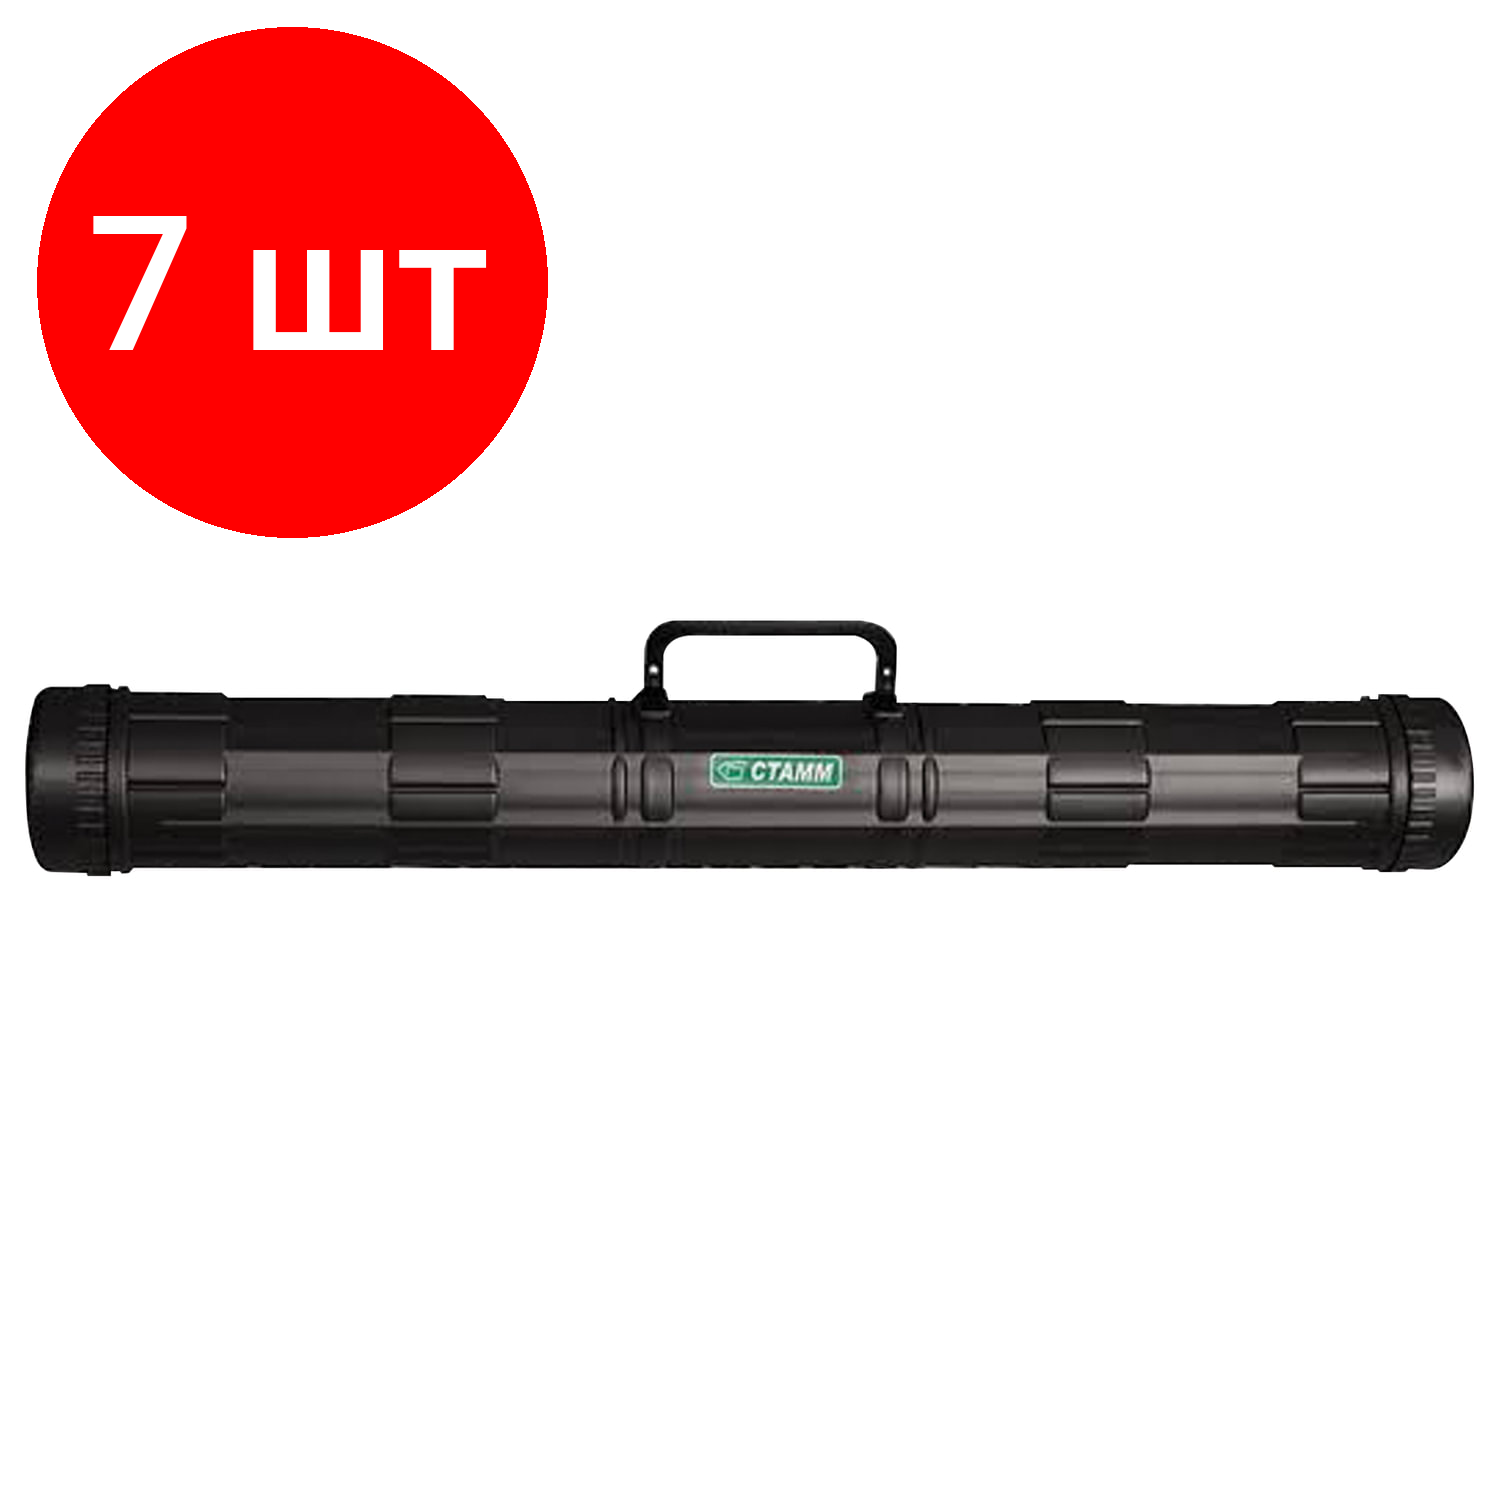 Комплект 7 шт, Тубус для чертежей СТАММ, диаметр 9 см, длина 68 см, А1, черный, с ручкой, ПТ21